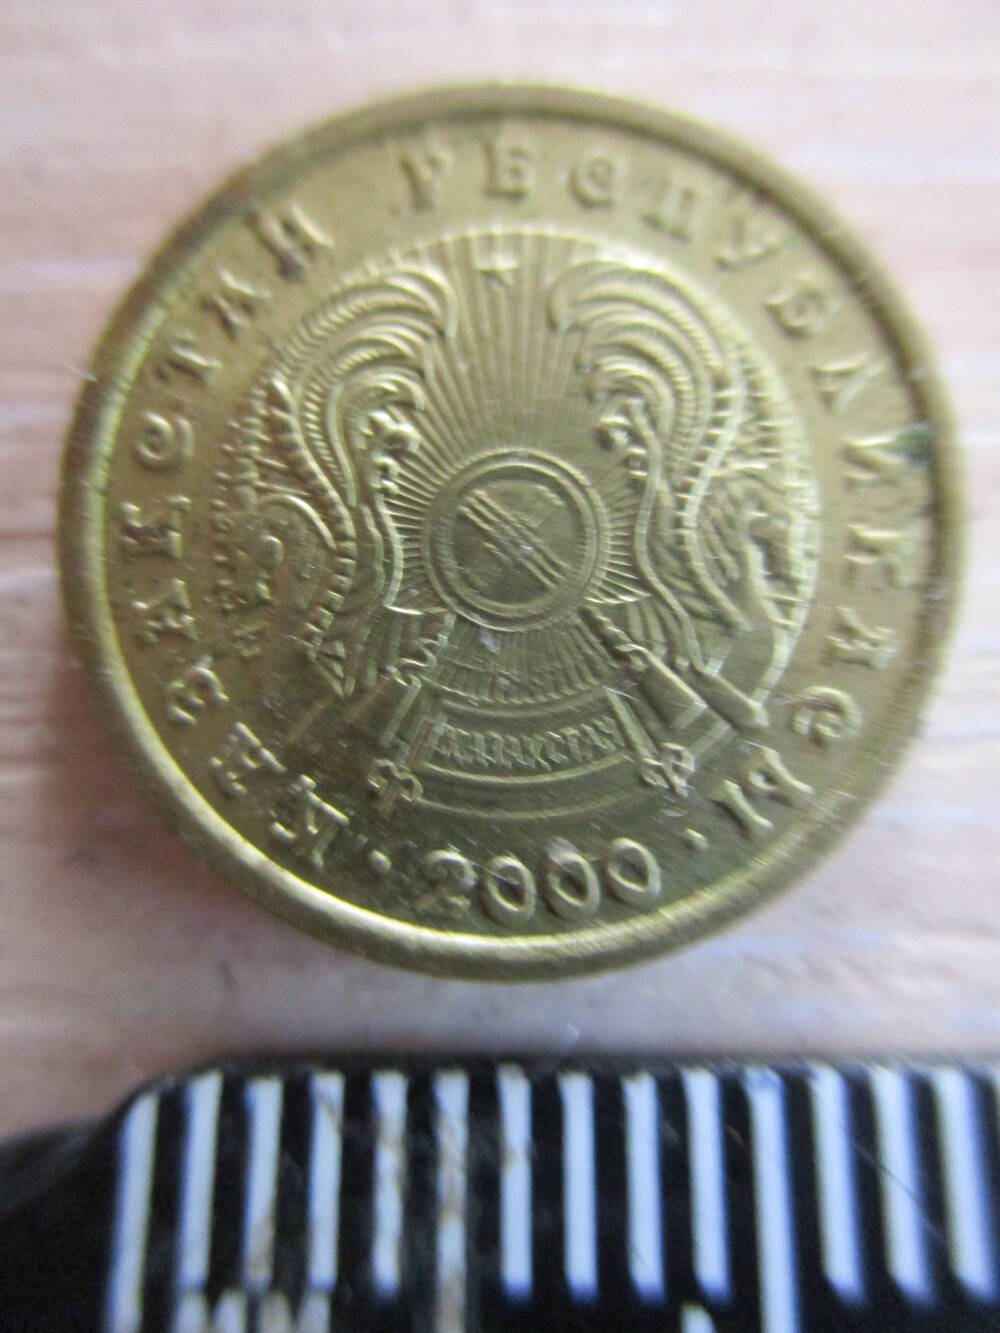 Монета Казахстана достоинством 1 тенге 2000 года.